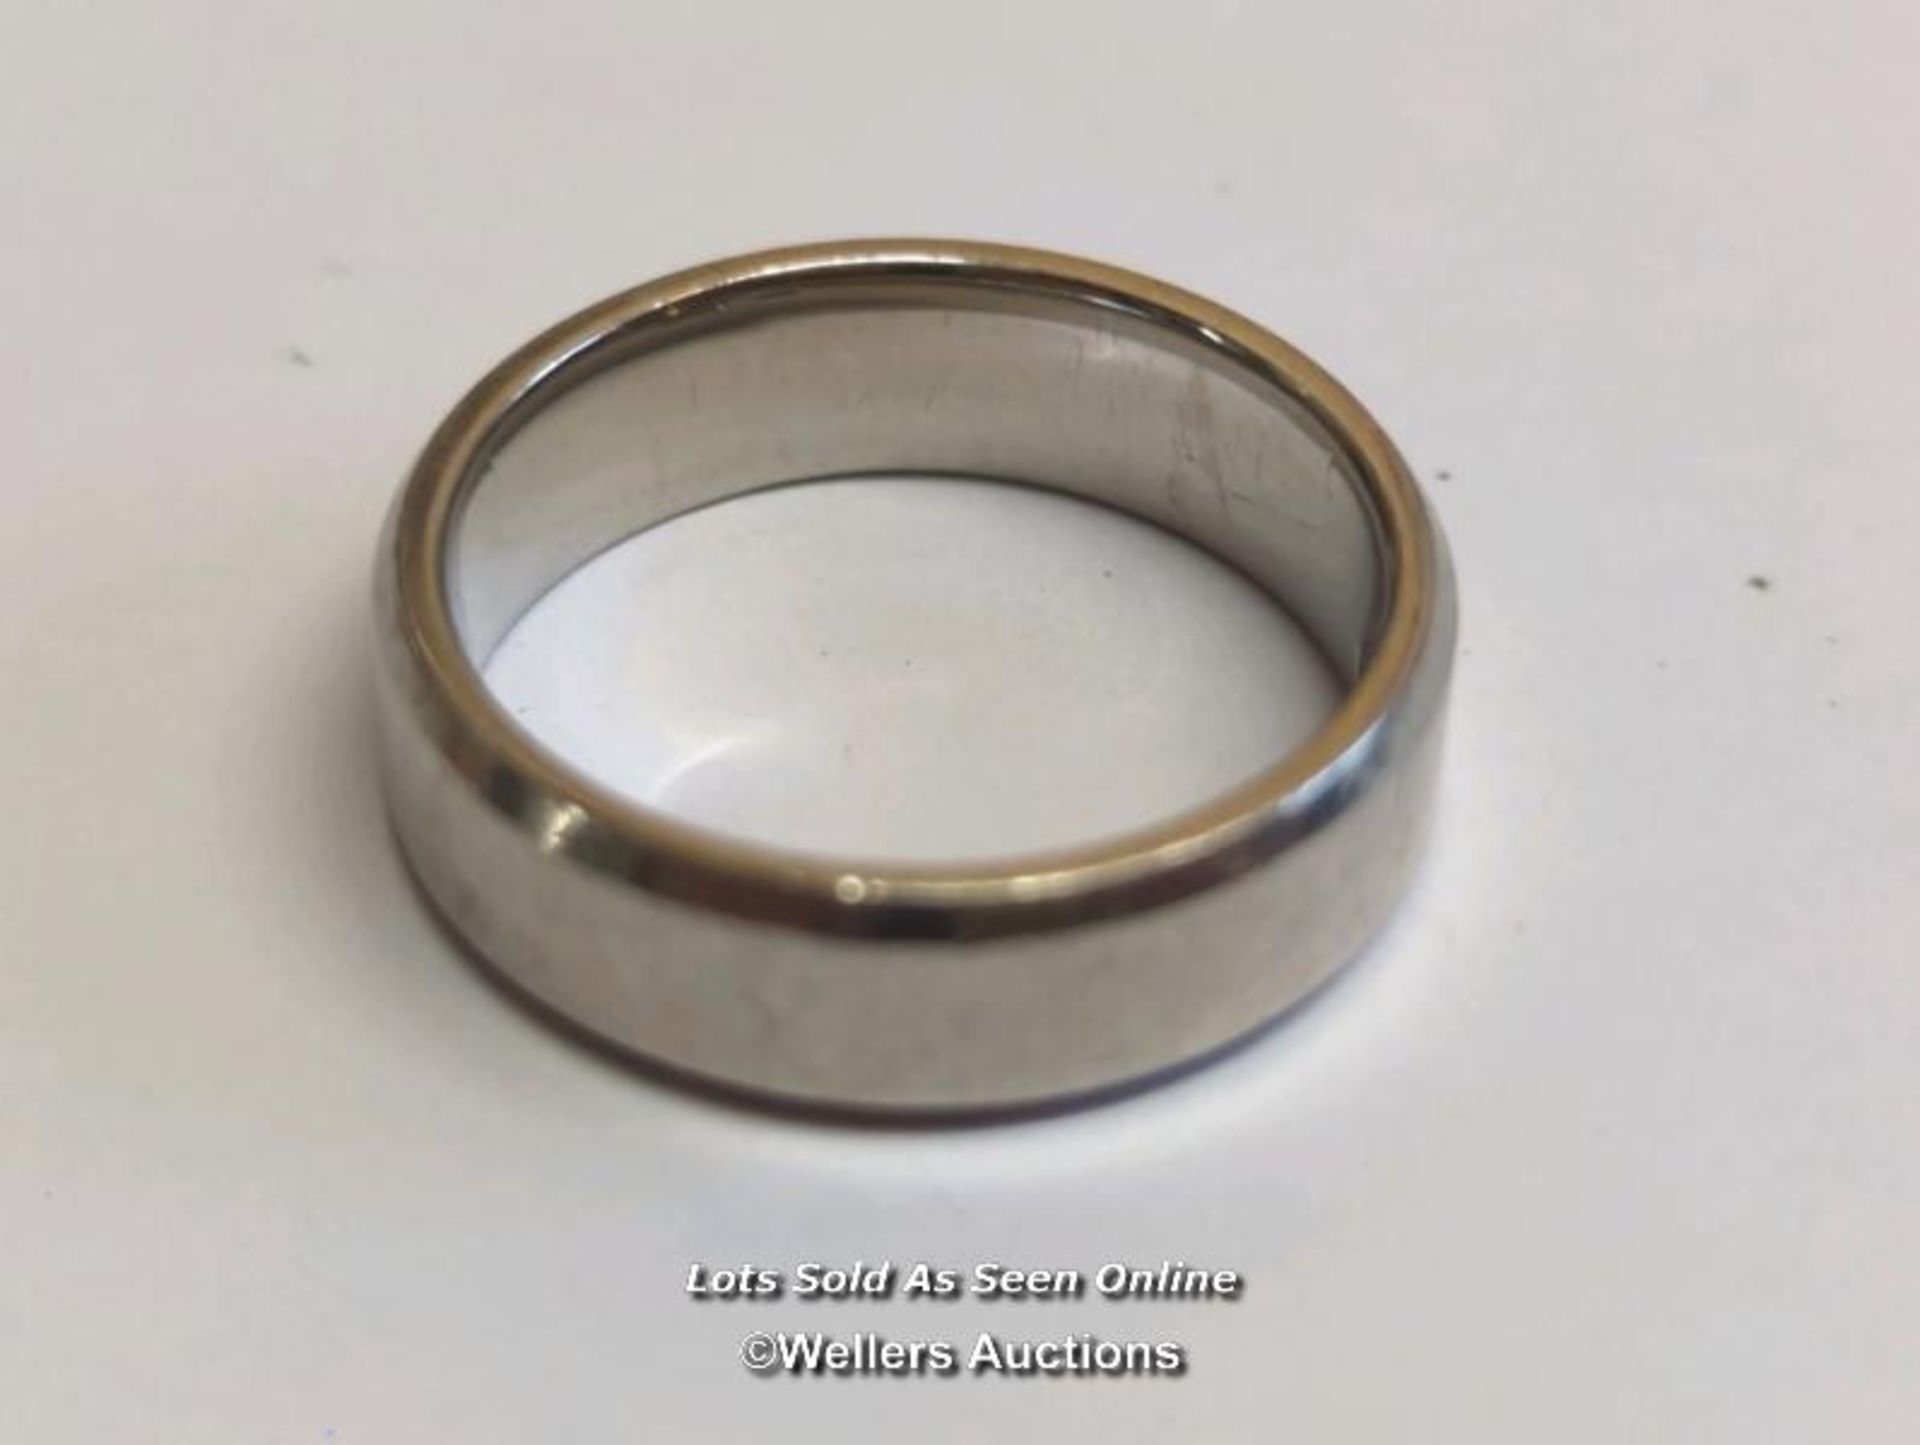 Palladium wedding ring, size Q, width 6mm, gross weight 7.35g / SF